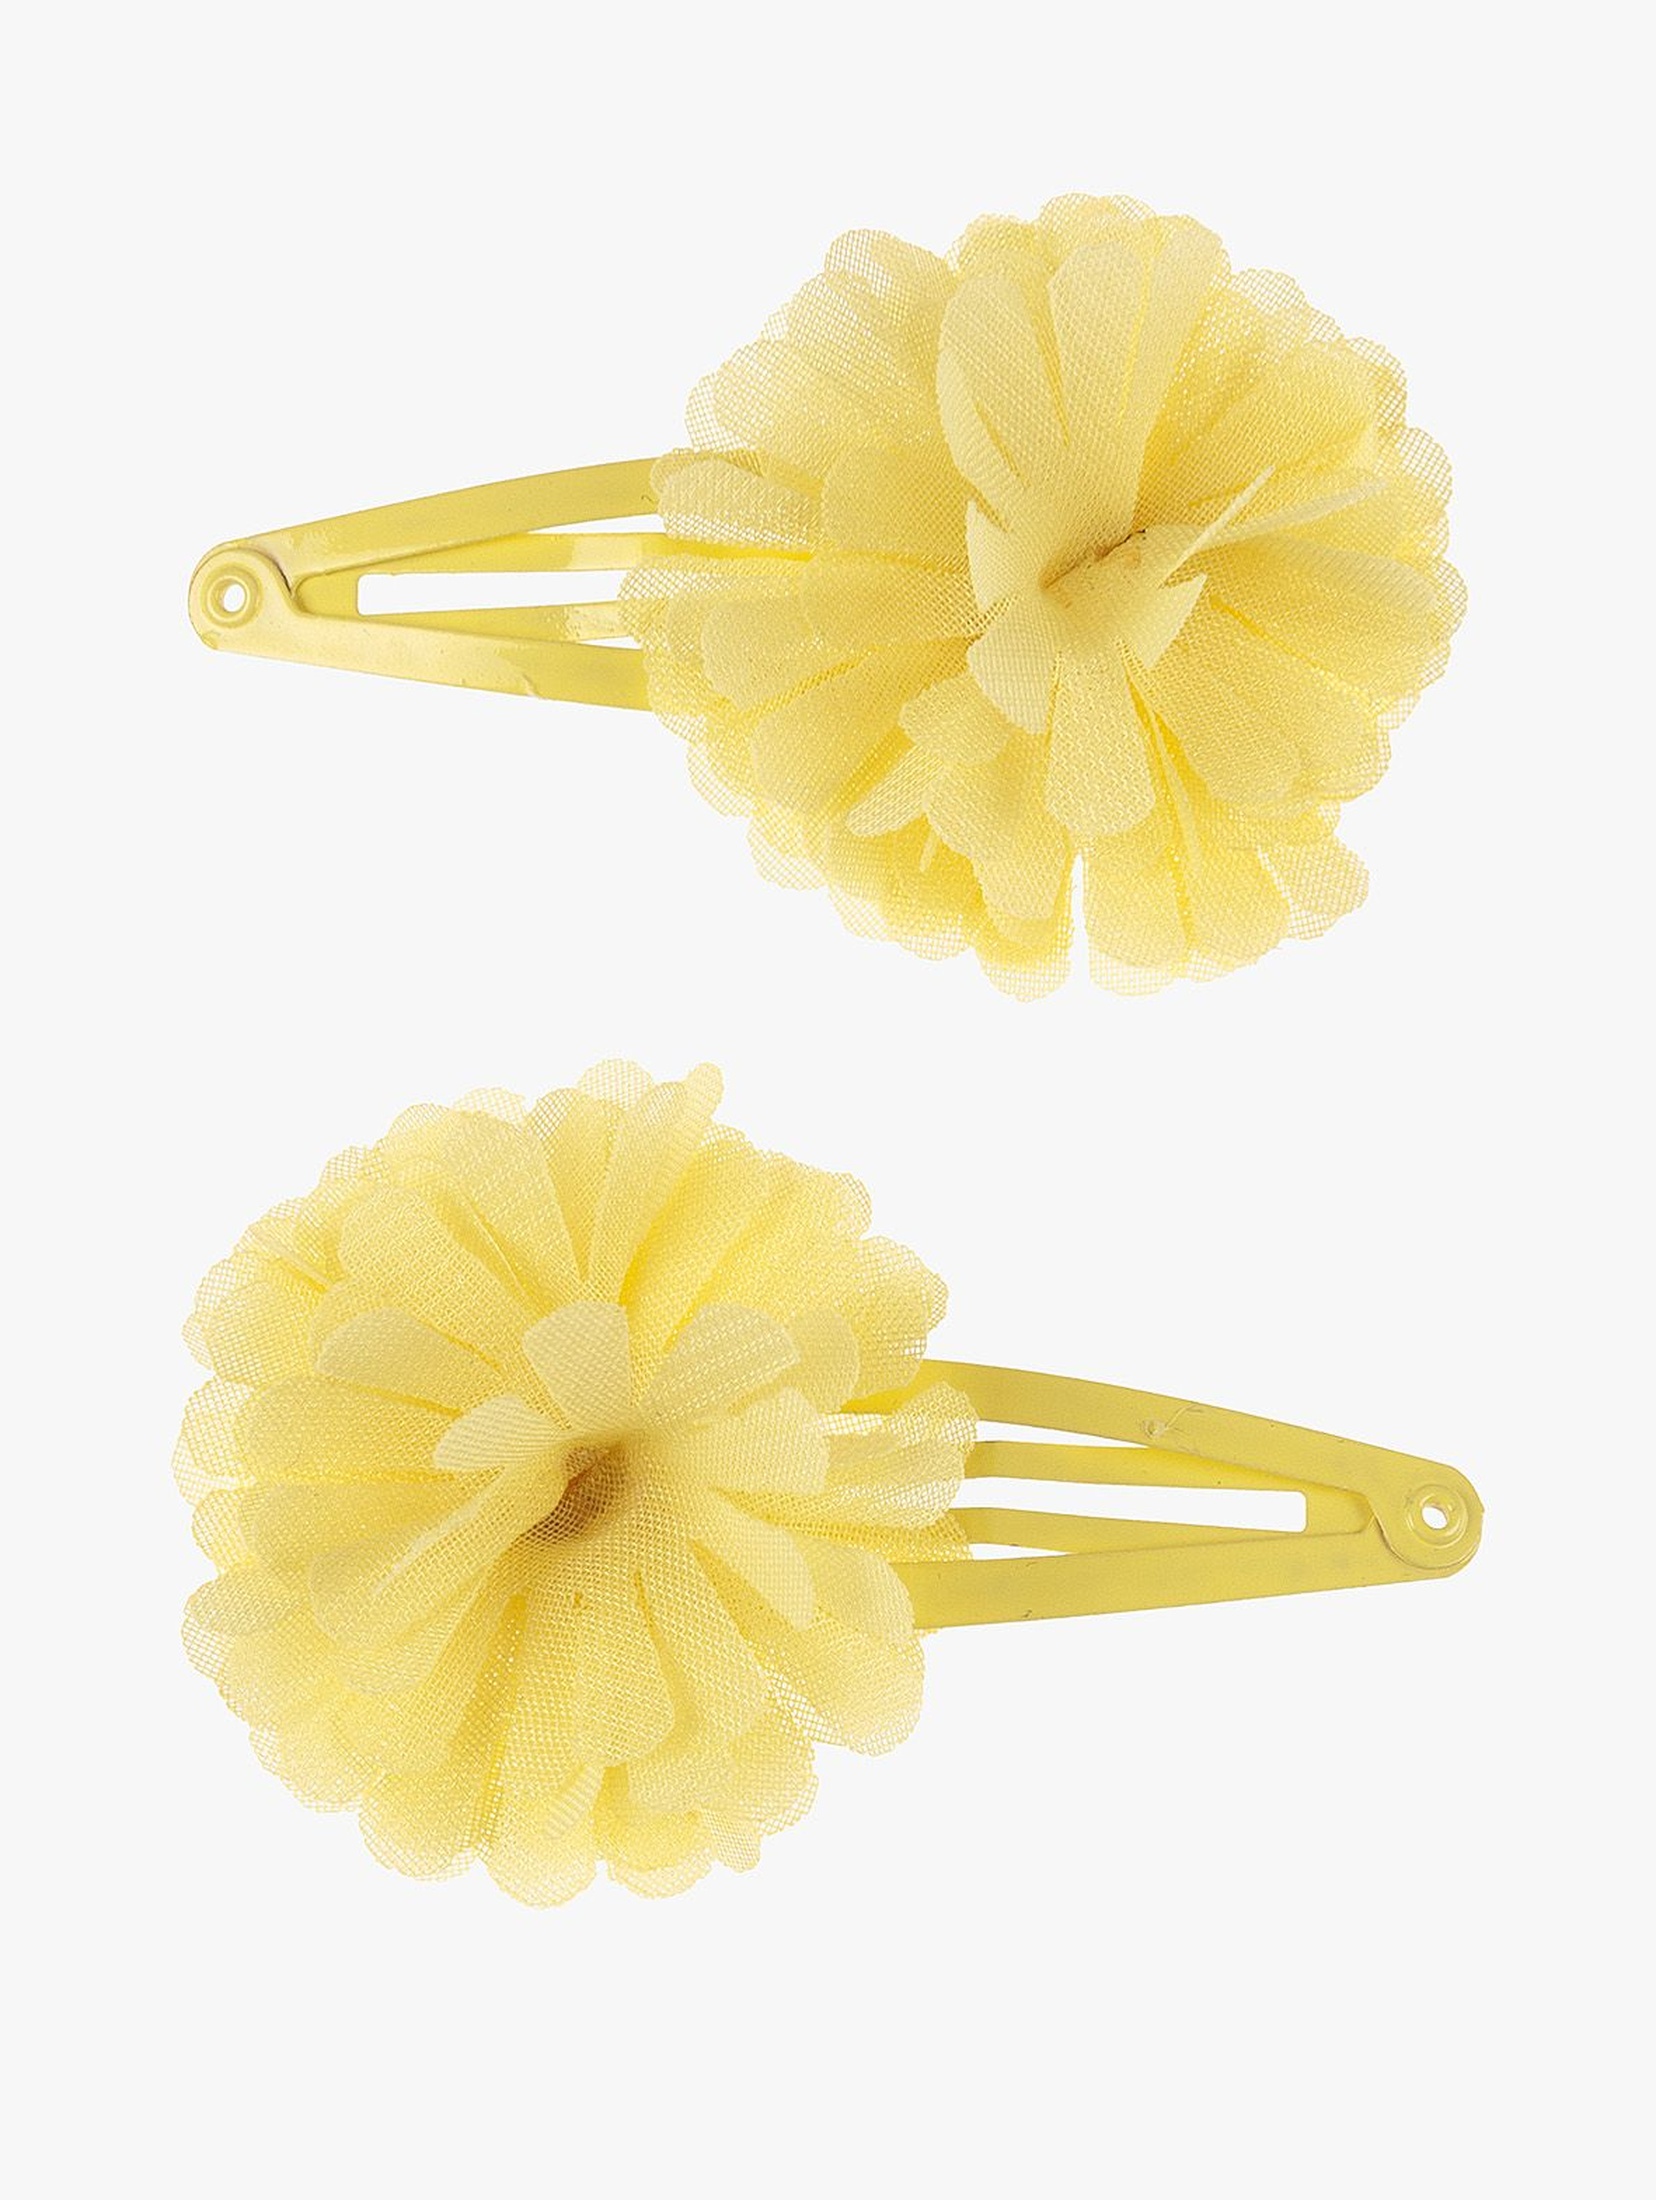 Spinki do włosów żółte kwiatki- 2szt